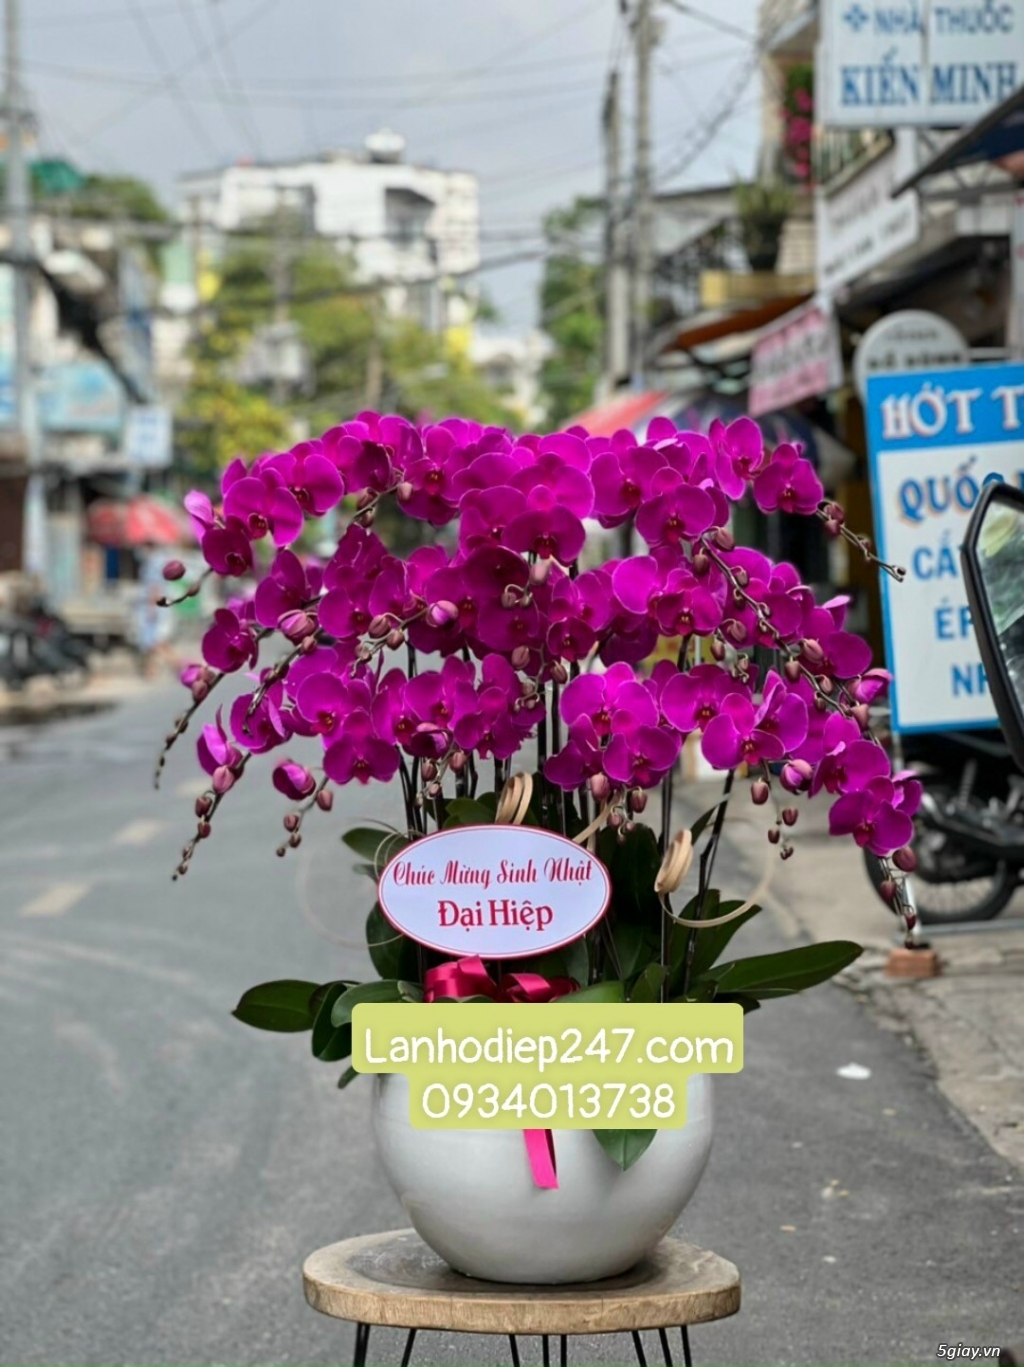 Những mẫu Lan Hồ Điệp đẹp bán chạy nhất tại Hoa lan Sài Gòn 247 - 14